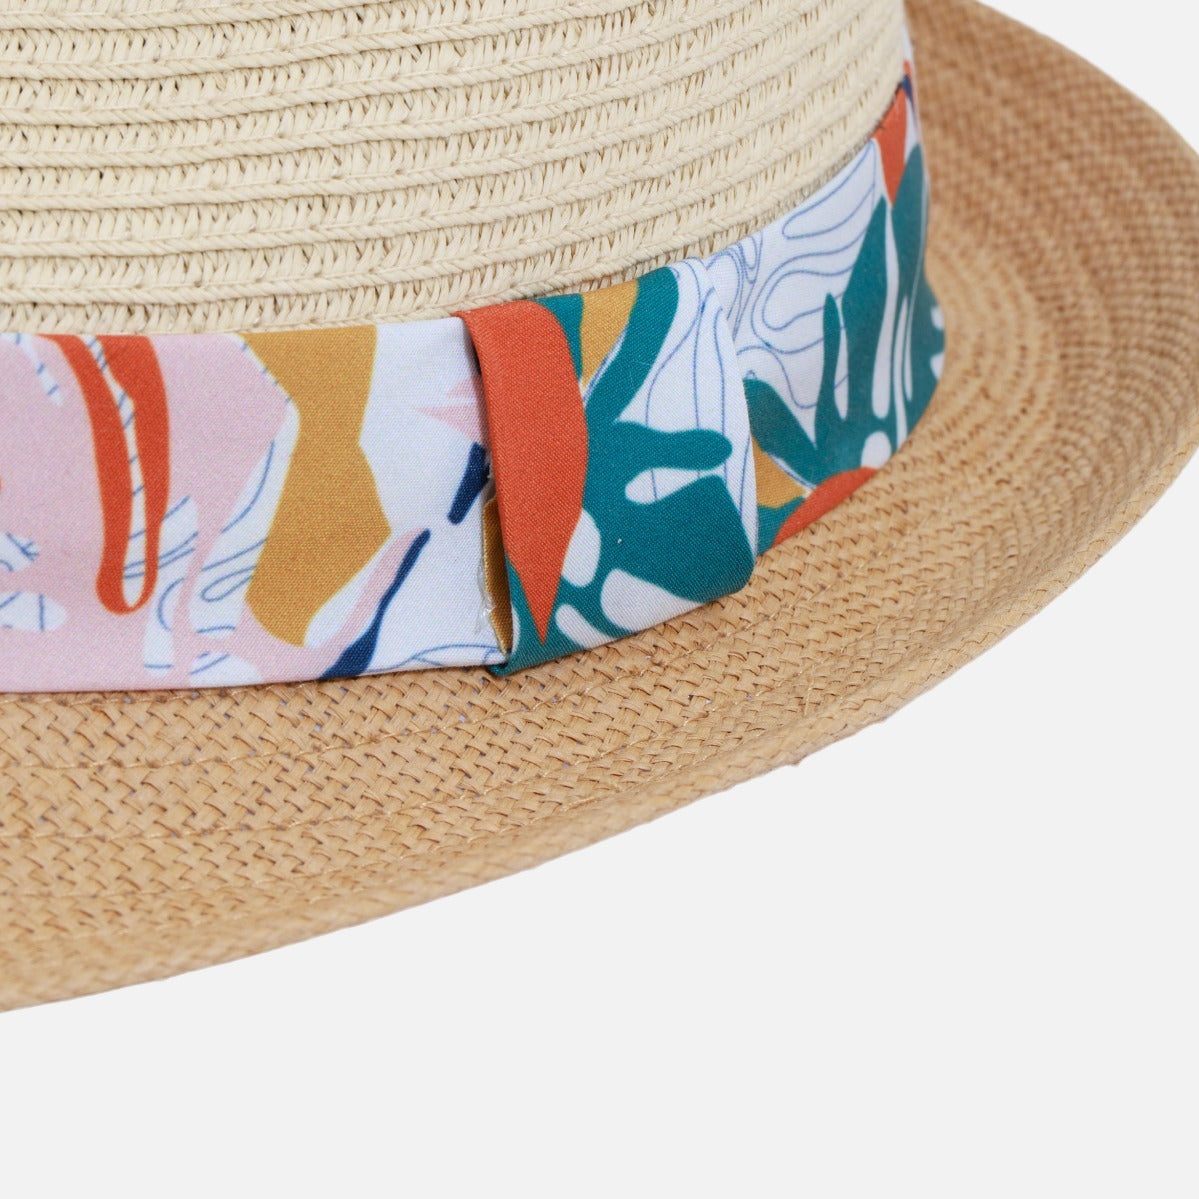 Chapeau fedora en paille 2 tons avec ruban imprimé fleurs tropicales colorées